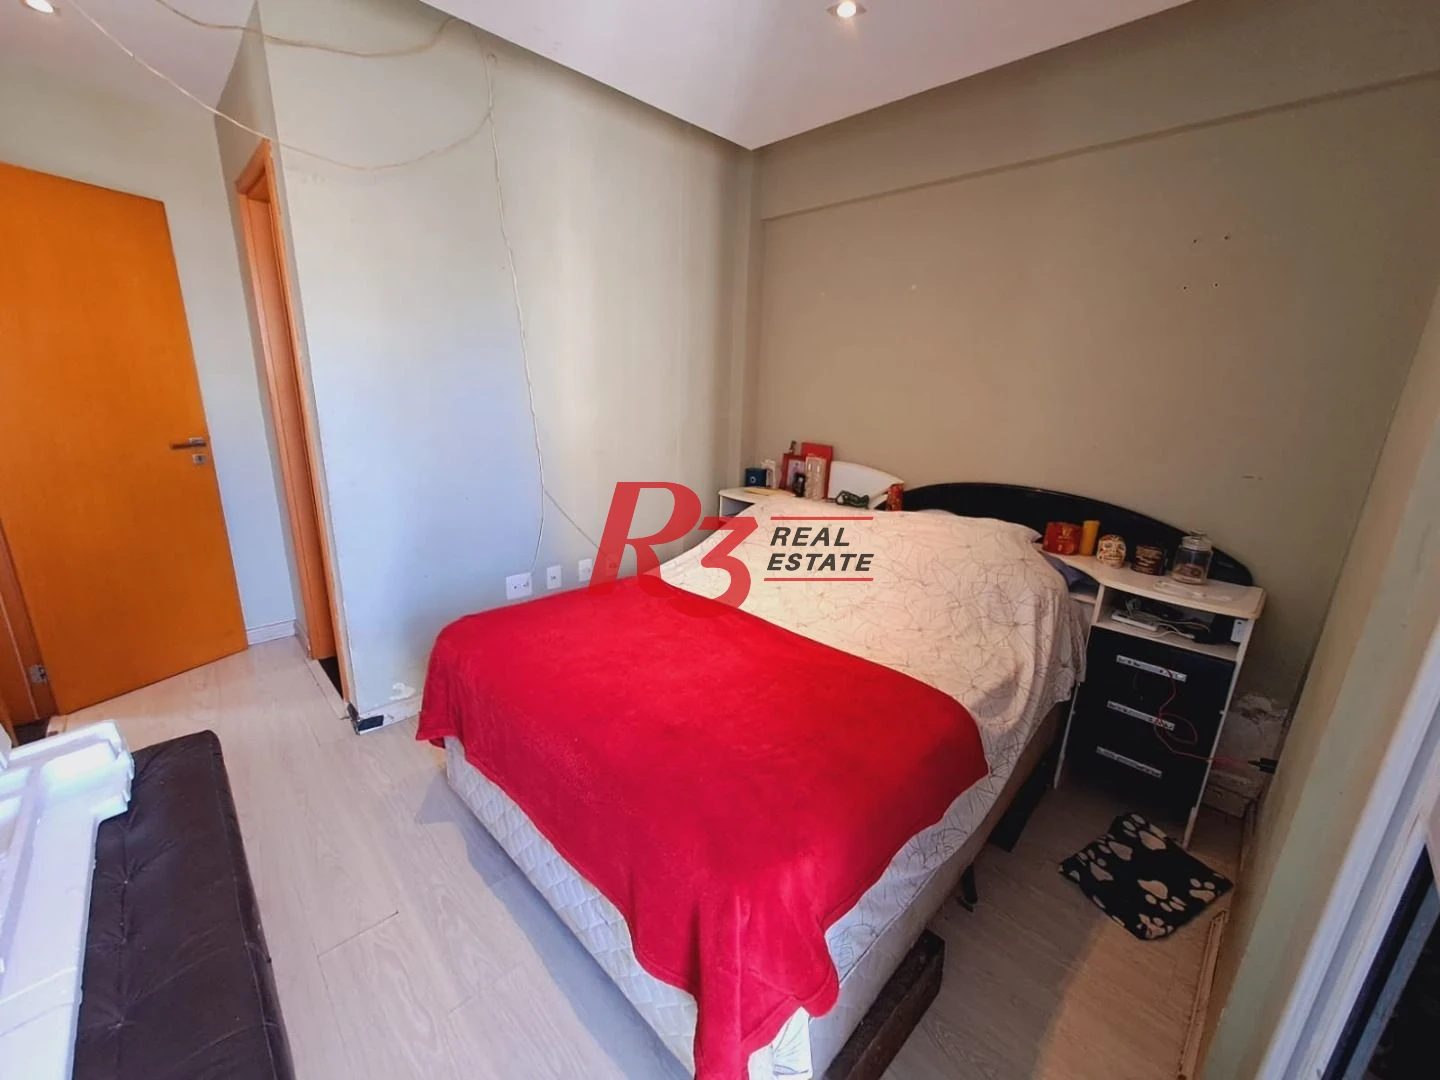 Apartamento com 2 dormitórios à venda, 75 m² por R$ 530.000,00 - Campo Grande - Santos/SP